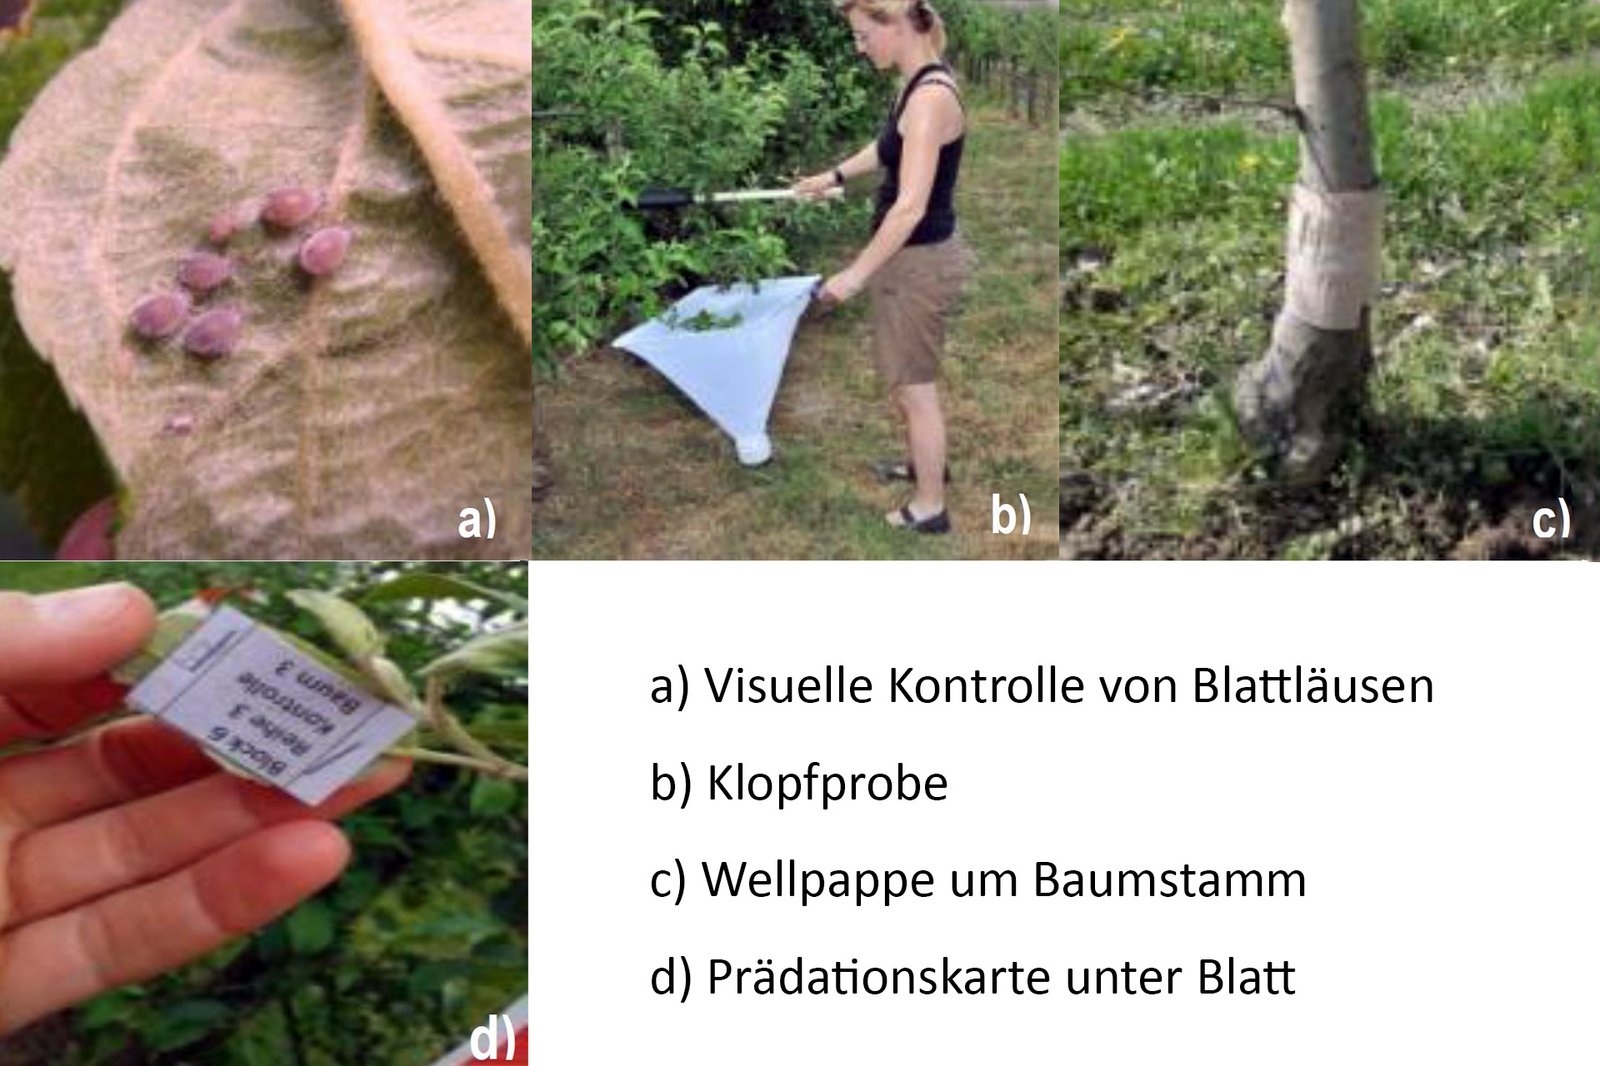 Monitoring Werkzeuge: Visuelle Kontrolle von Blattläusen, Kopfprobe, Wellpappe um den Baumstamm, Prädationskarte unter Blatt